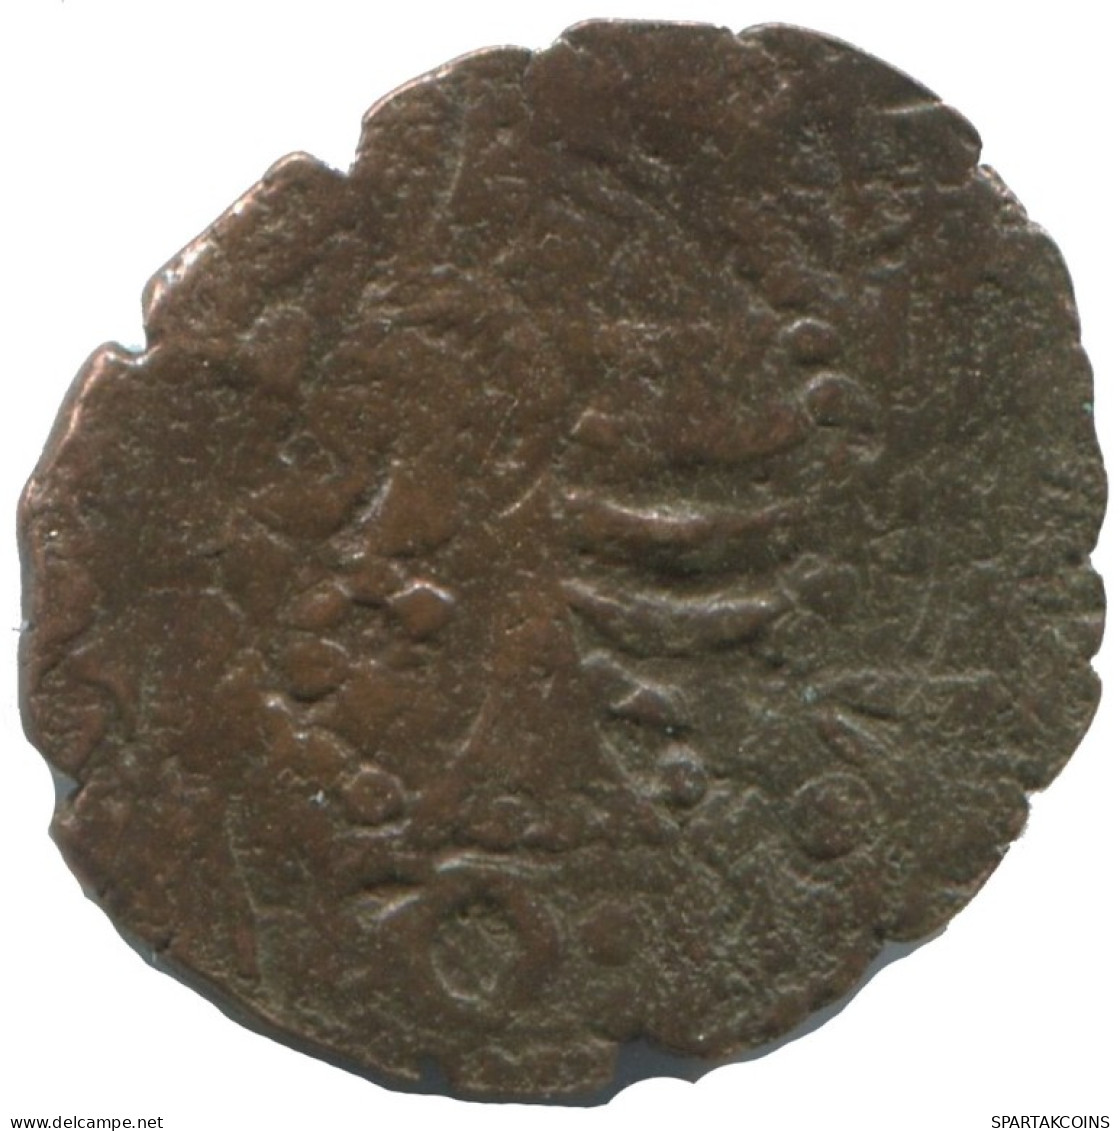 CRUSADER CROSS Authentic Original MEDIEVAL EUROPEAN Coin 1.3g/16mm #AC279.8.D.A - Altri – Europa